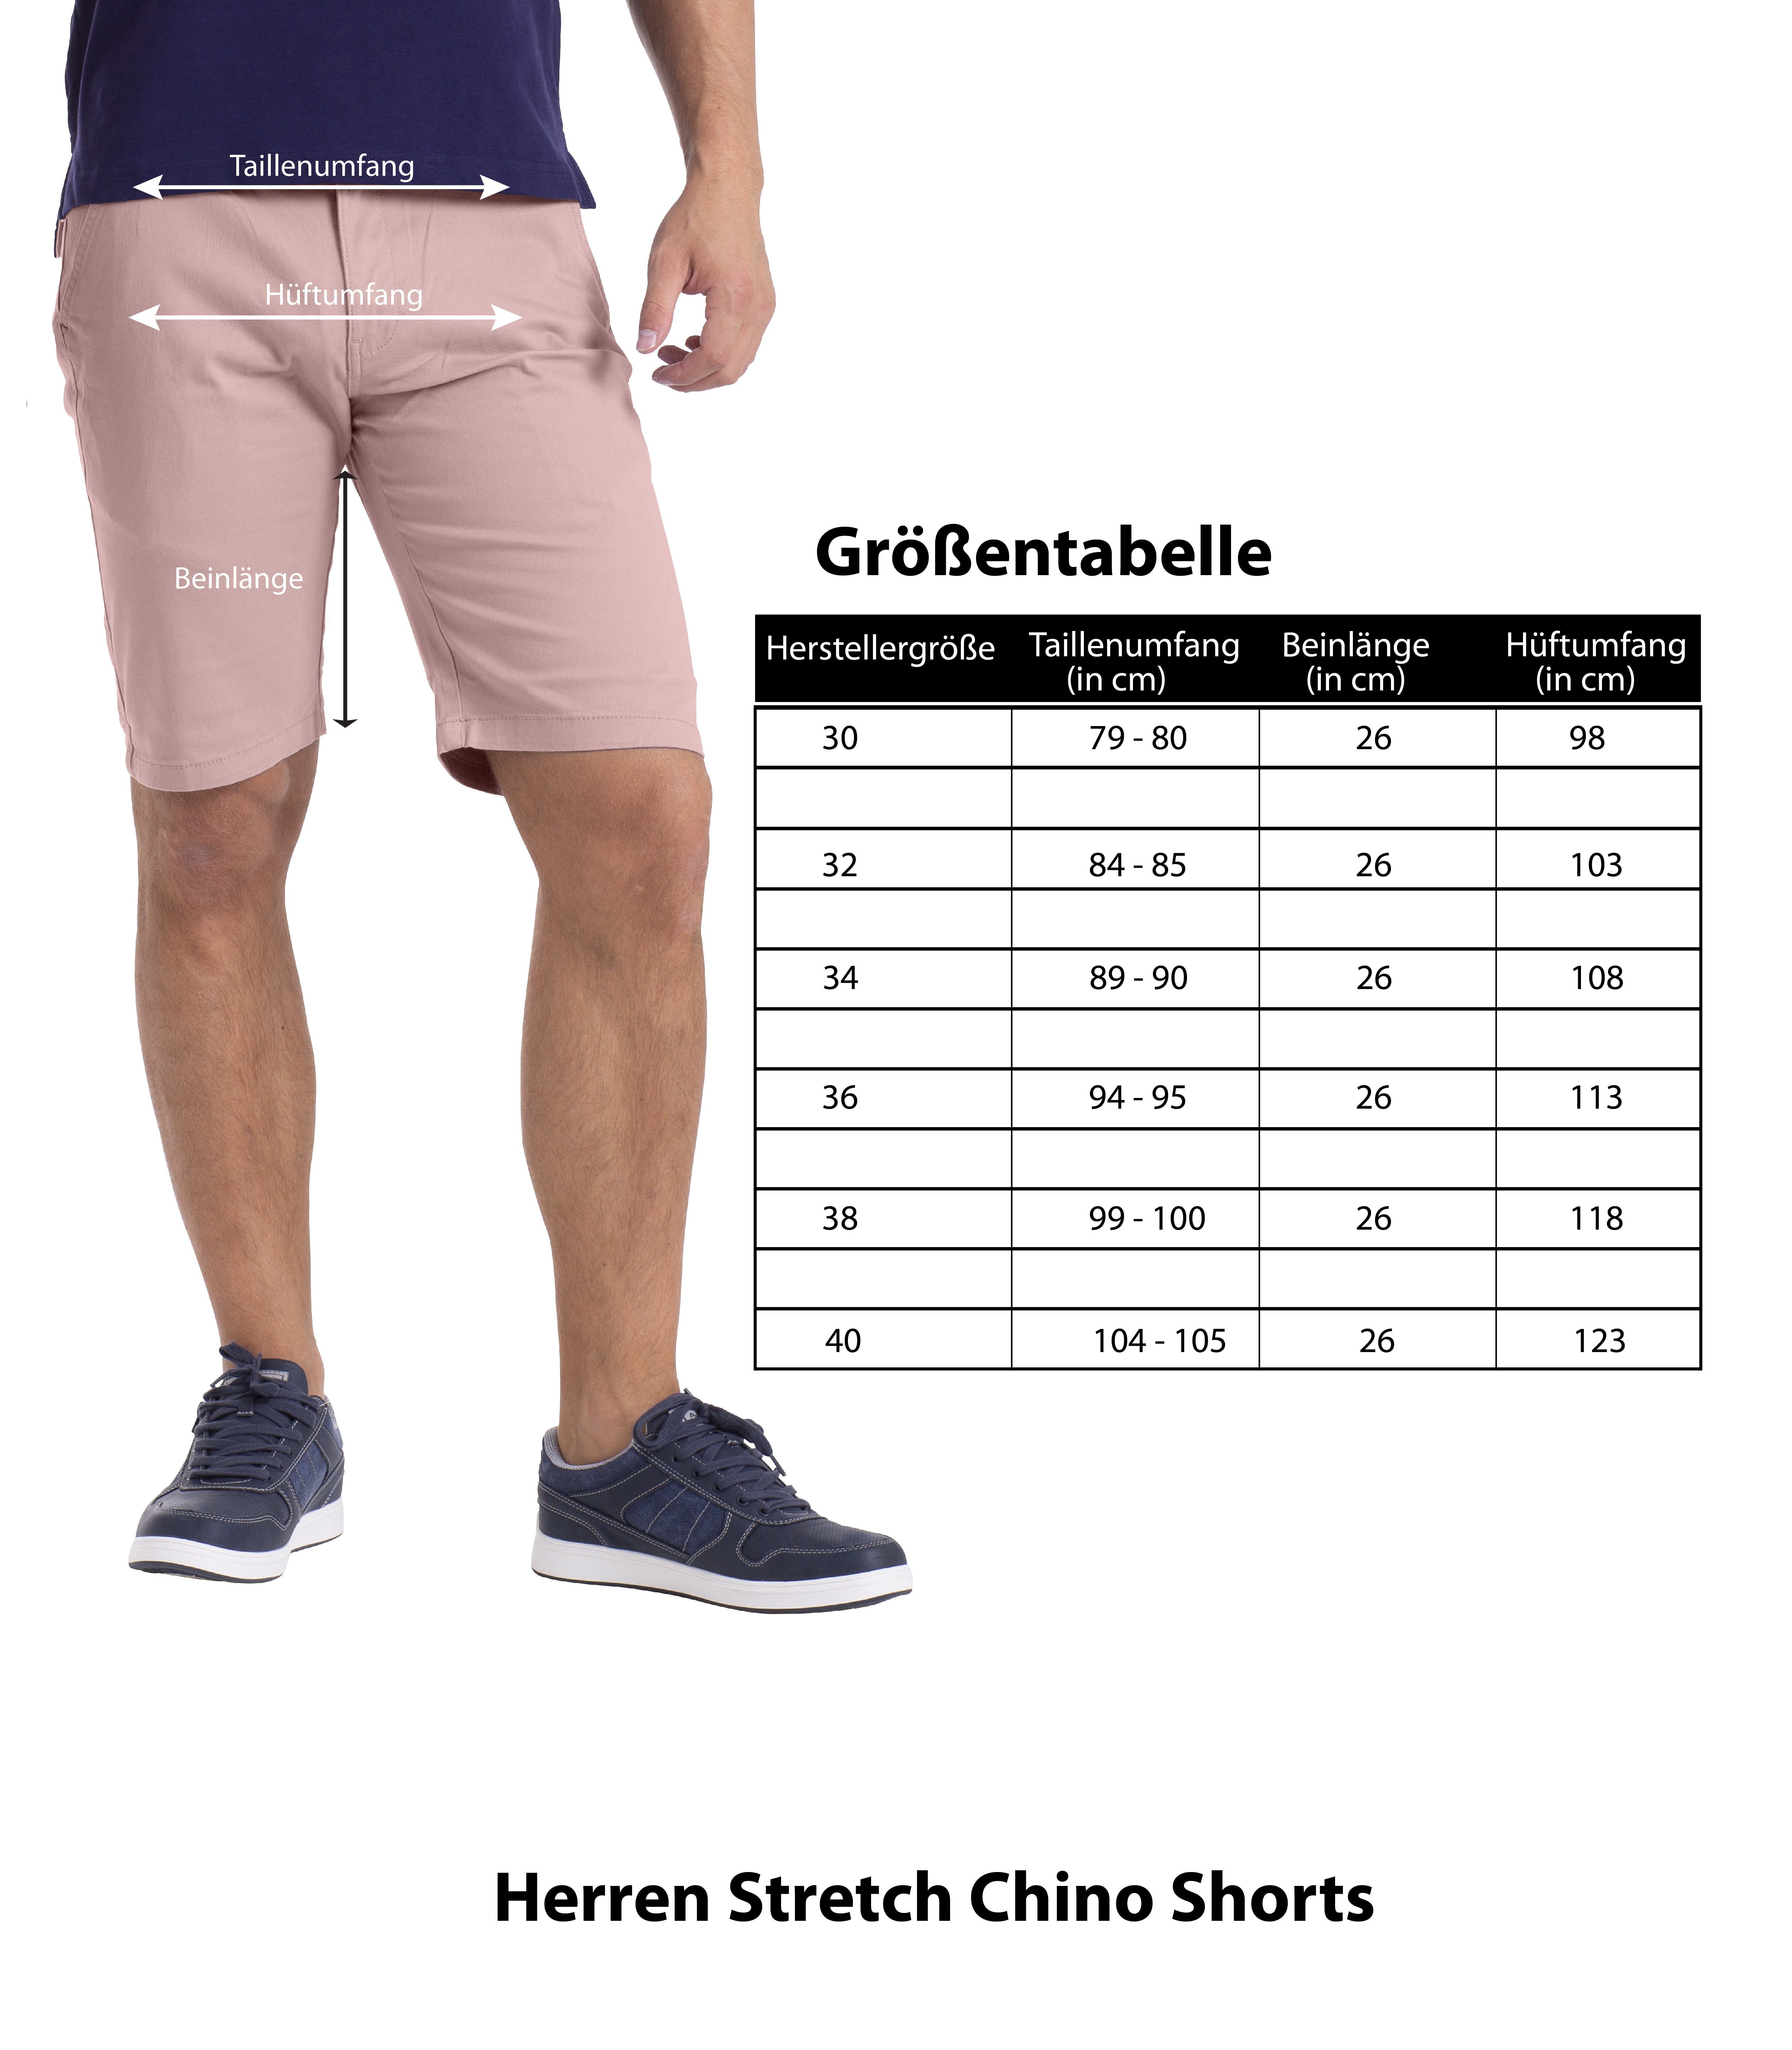 BlauerHafen Chinoshorts Herren Stretch Fit Bermuda Chino Hose Hellrosa Strecken-Baumwolle Slim Shorts